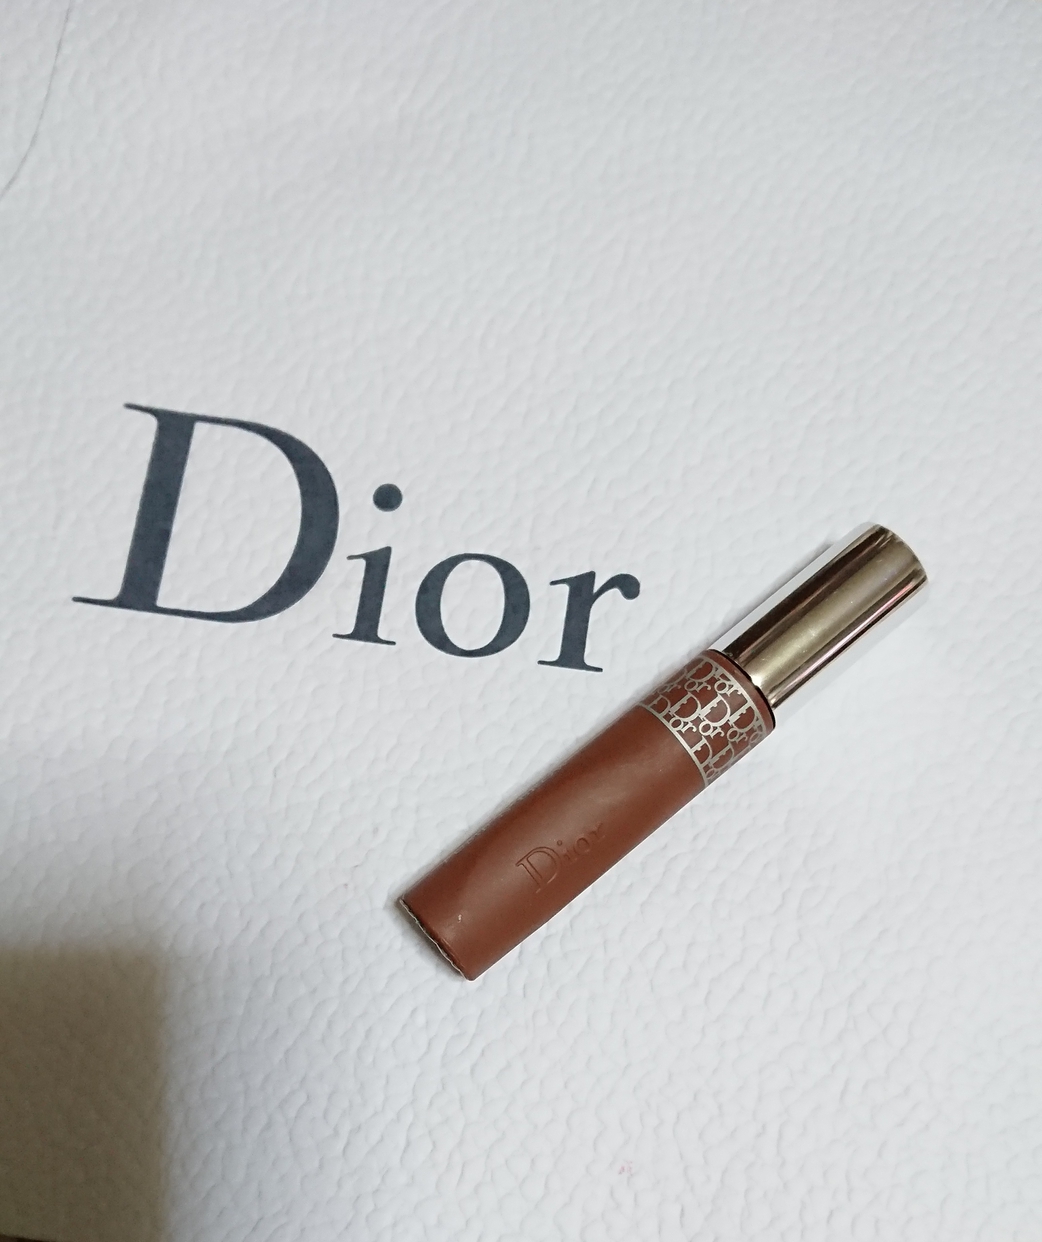 Dior(ディオール)ショウ パンプ&ブロウを使ったErikaさんのクチコミ画像1